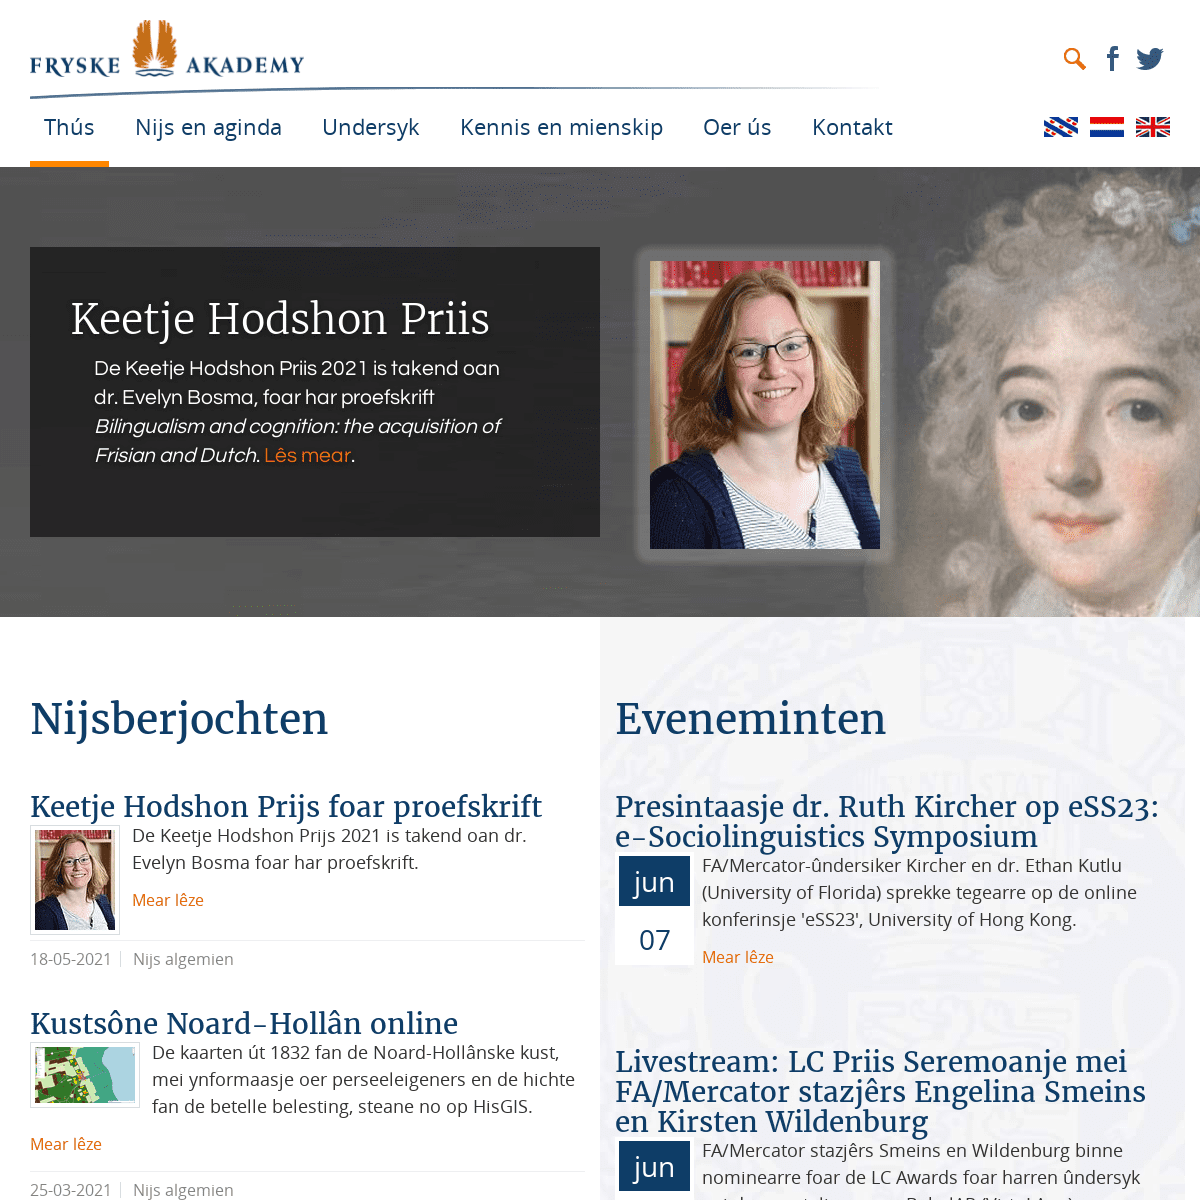 A complete backup of https://fryske-akademy.nl